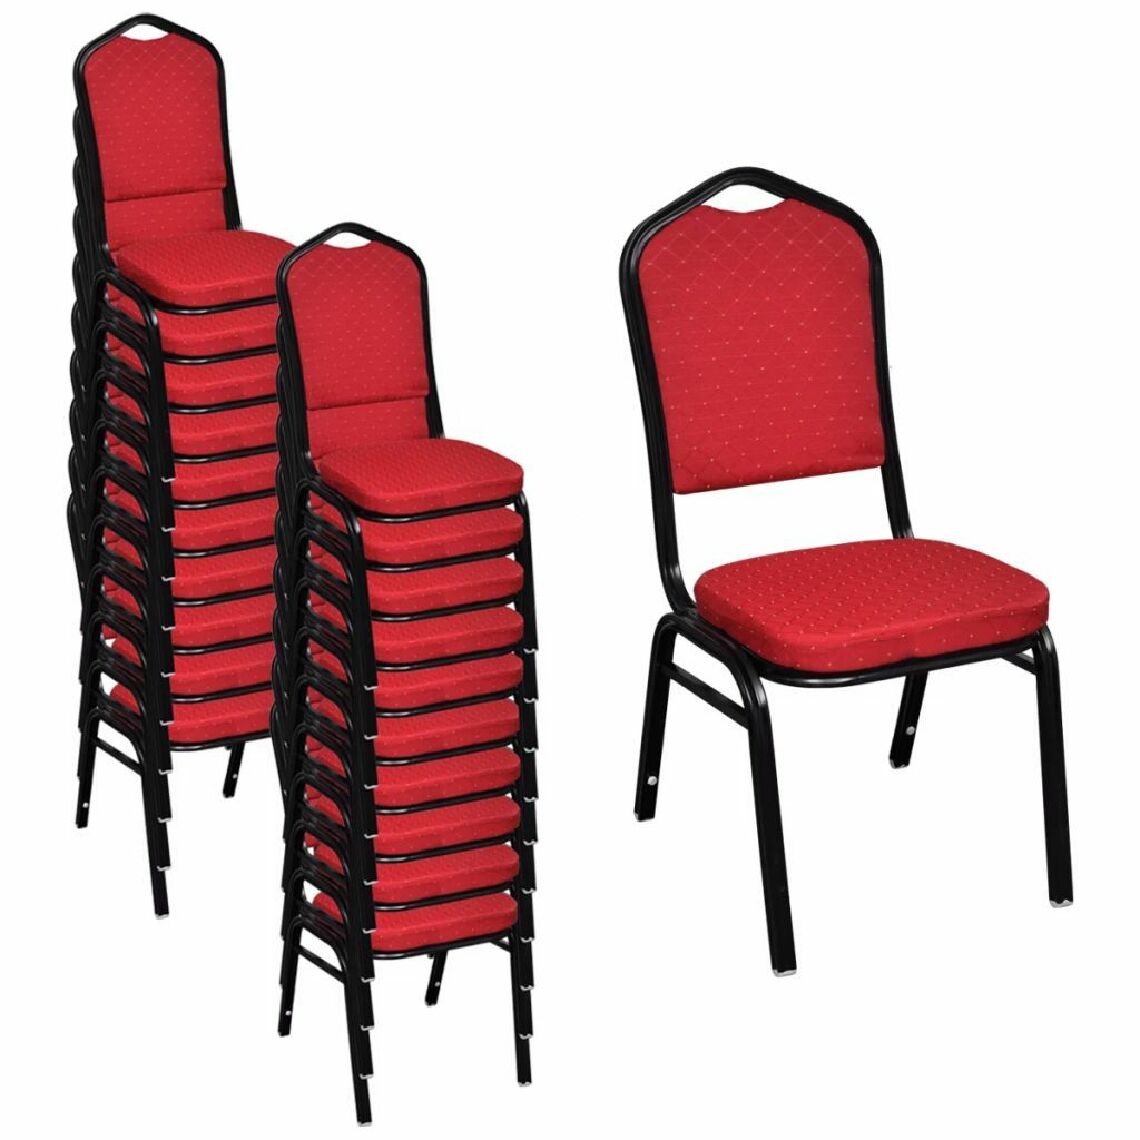 Helloshop26 - Lot de 20 chaises de salle à manger empilable tissu rouge 1902119/2 - Chaises